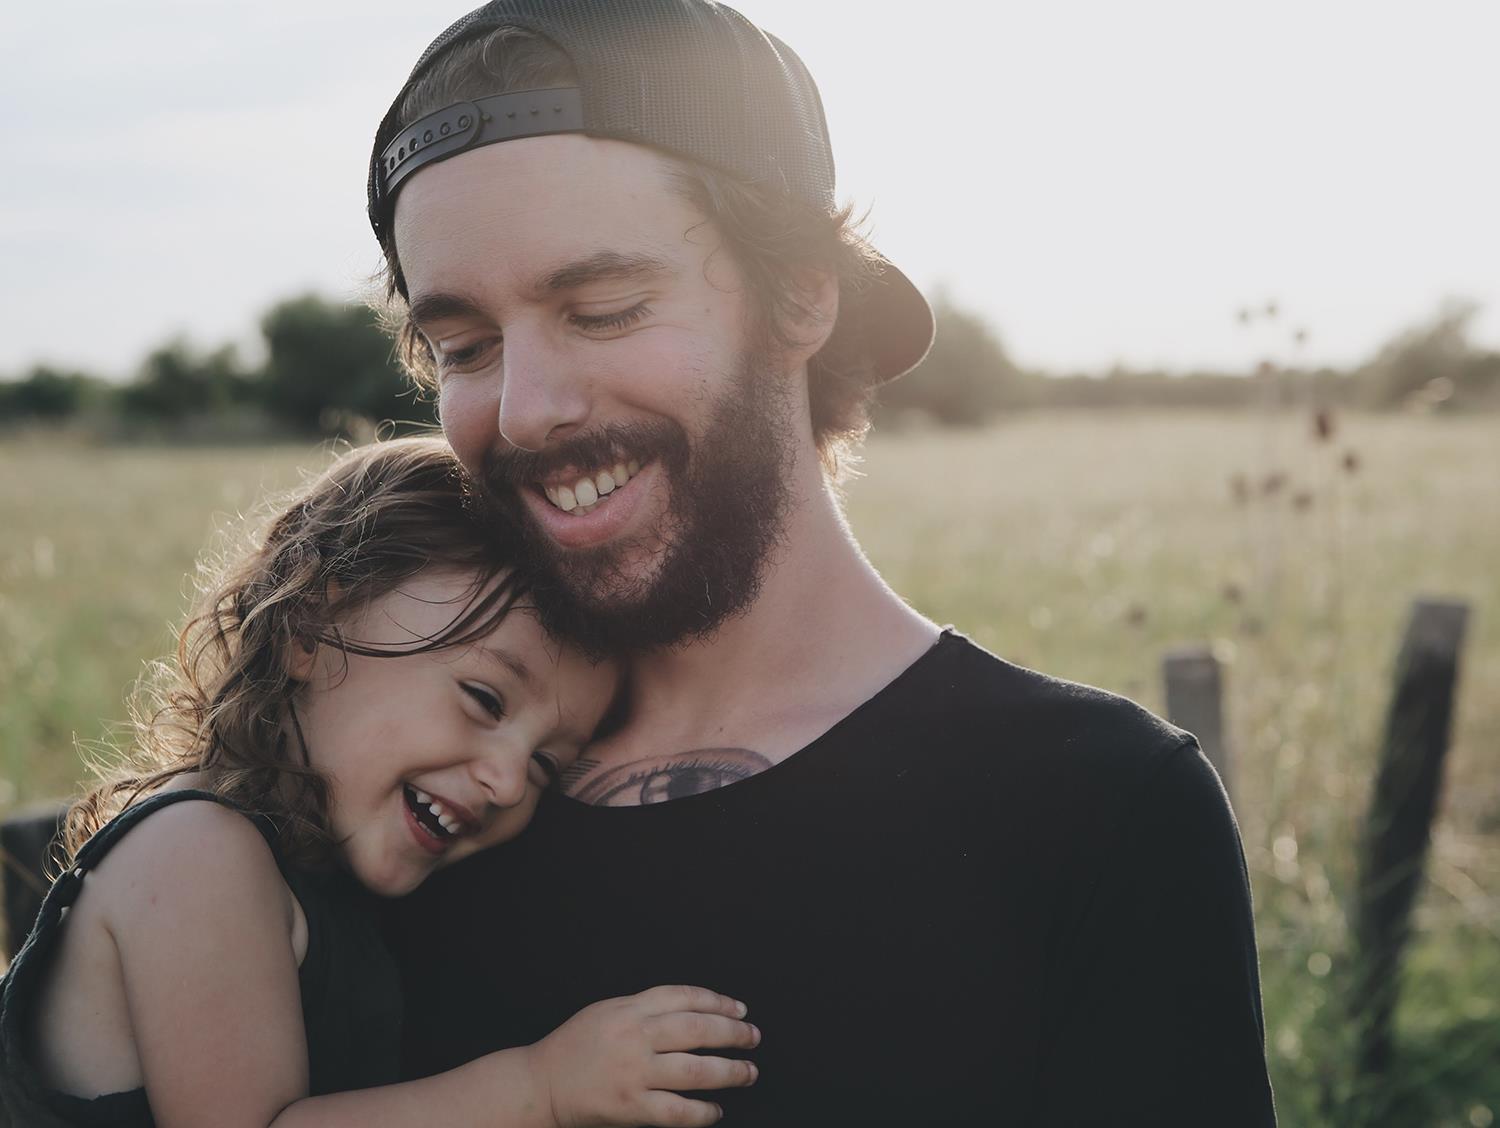 Ein junger Mann mit Vollbart umarmt ein kleines Mädchen - beide lächeln.